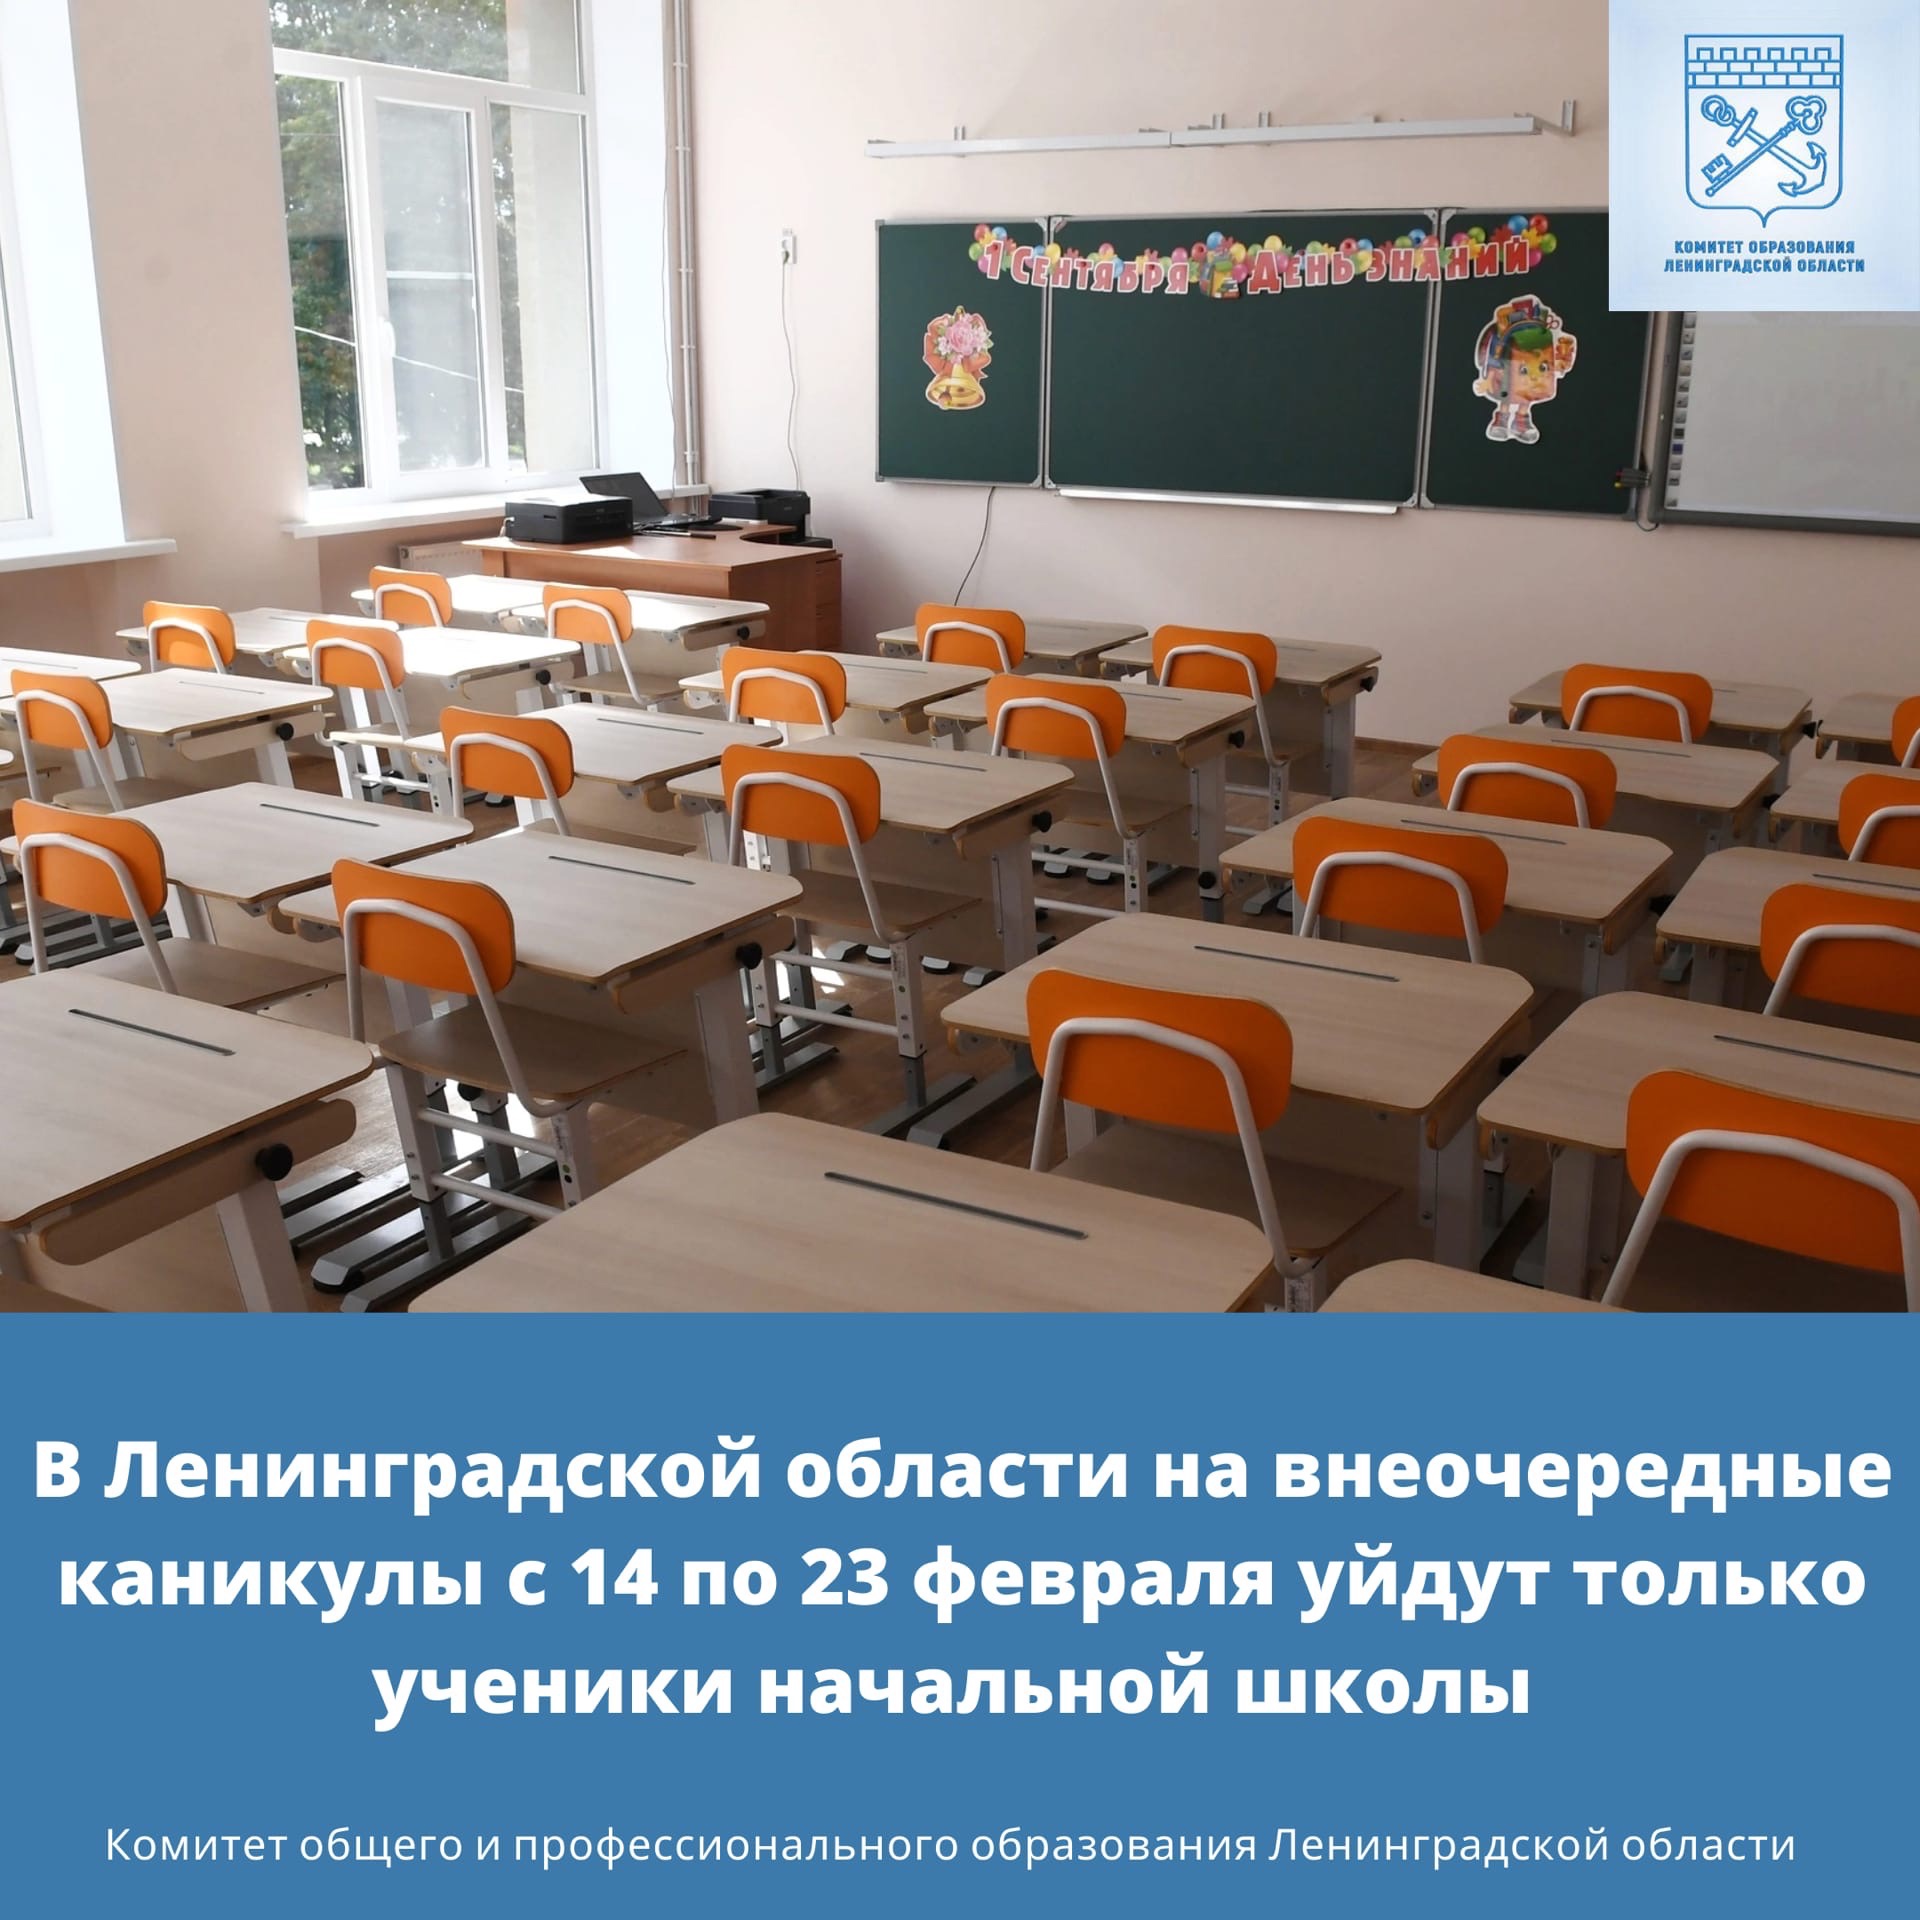 с 14 по 23 февраля ученики начальной школы Ленинградской области уйдут на внеочередные каникулы